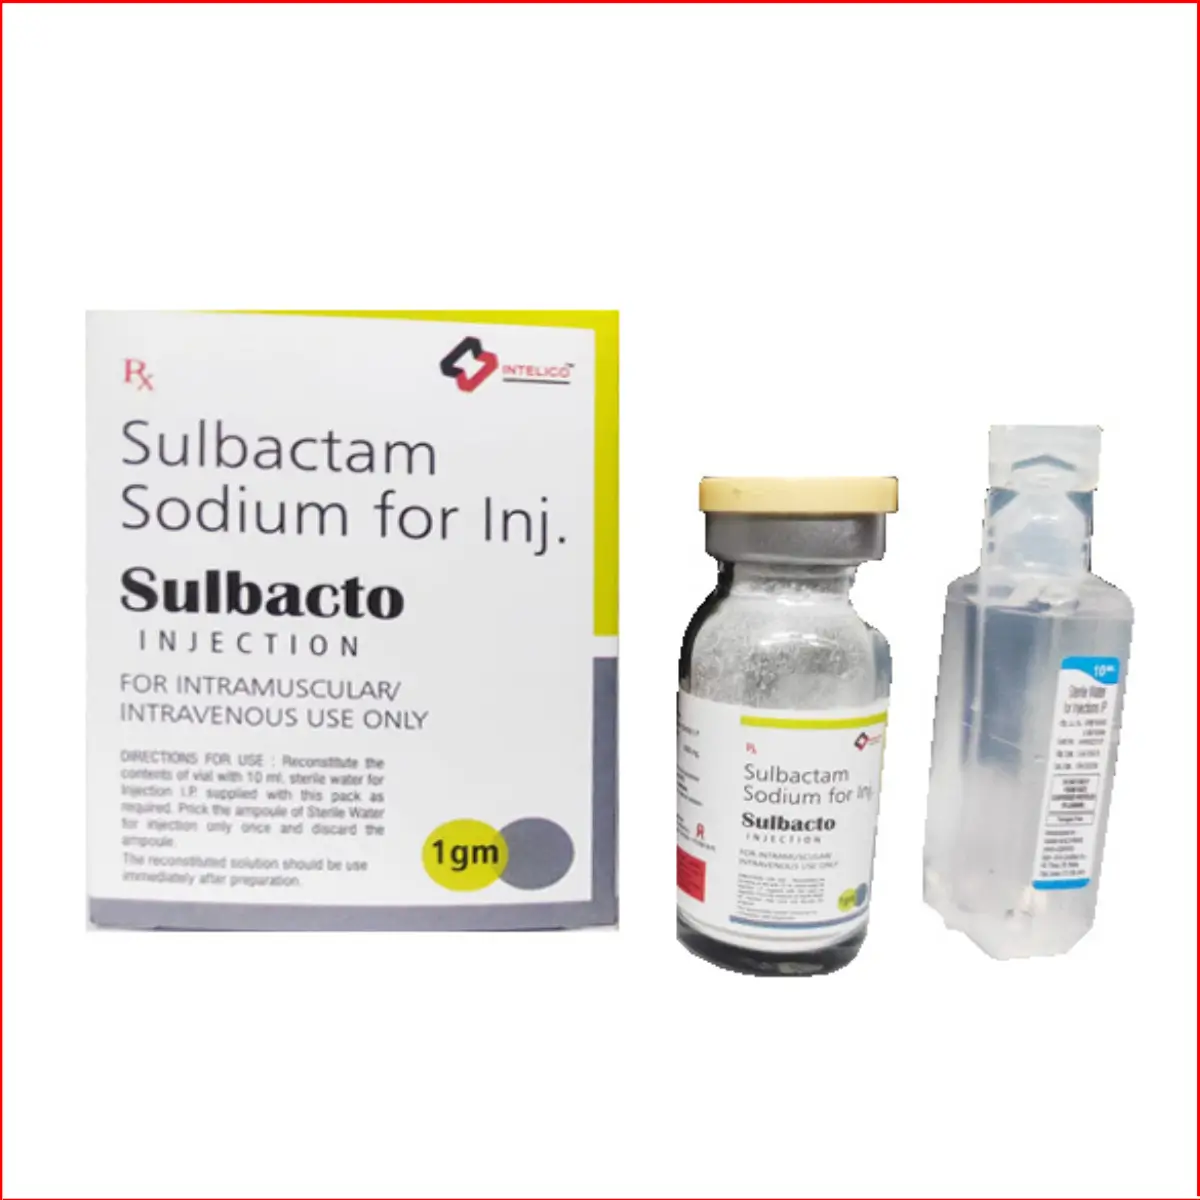 Sulbactam sodium for injection